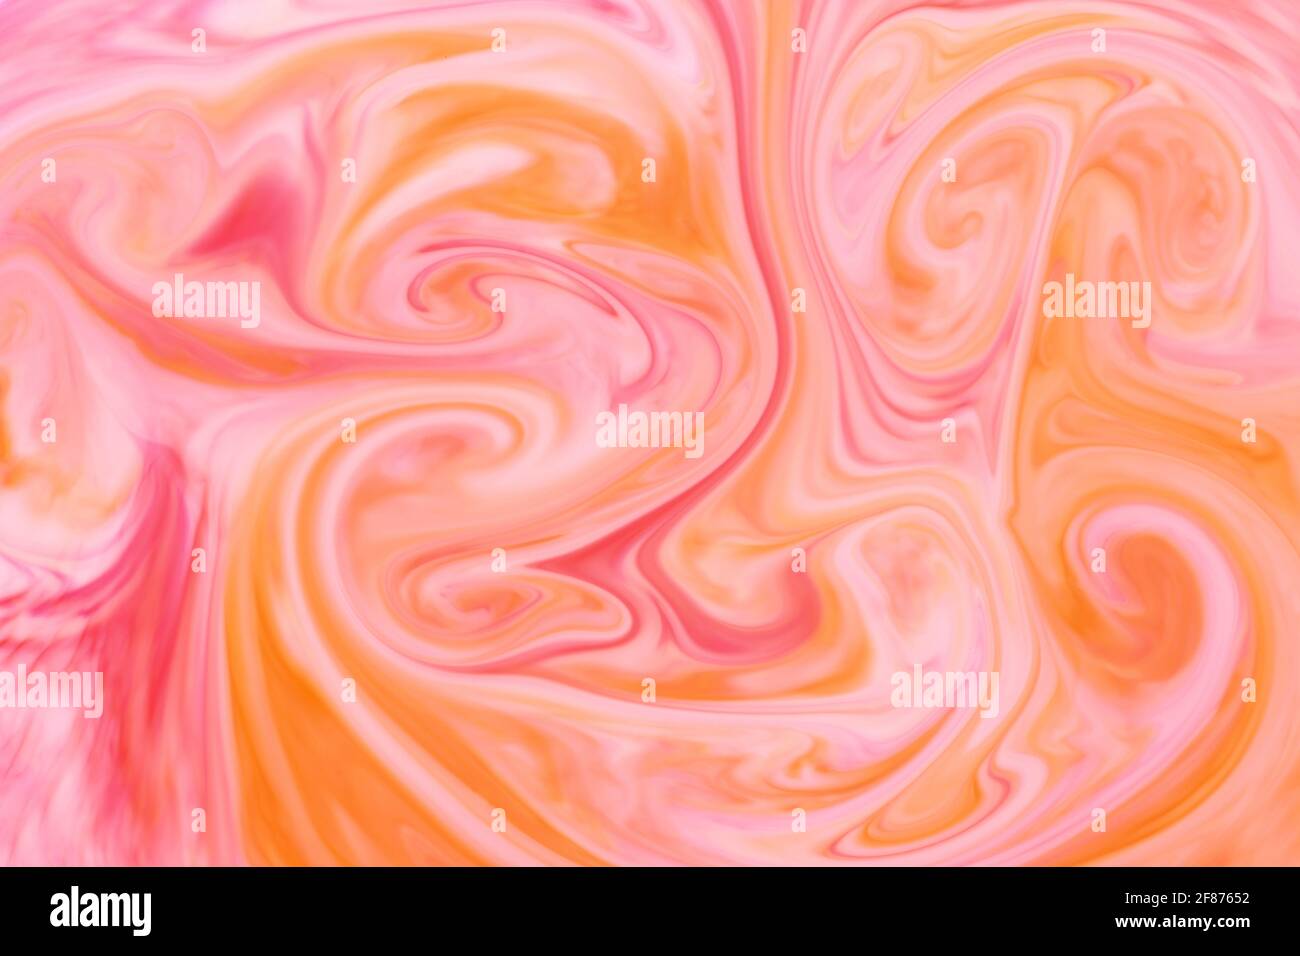 Abstrakte Hintergrundtextur aus wirbelnden oder fließenden Orange und Pink Tinte oder Pigment bilden eine künstlerische Mischung von Farben für Eine Designvorlage Stockfoto